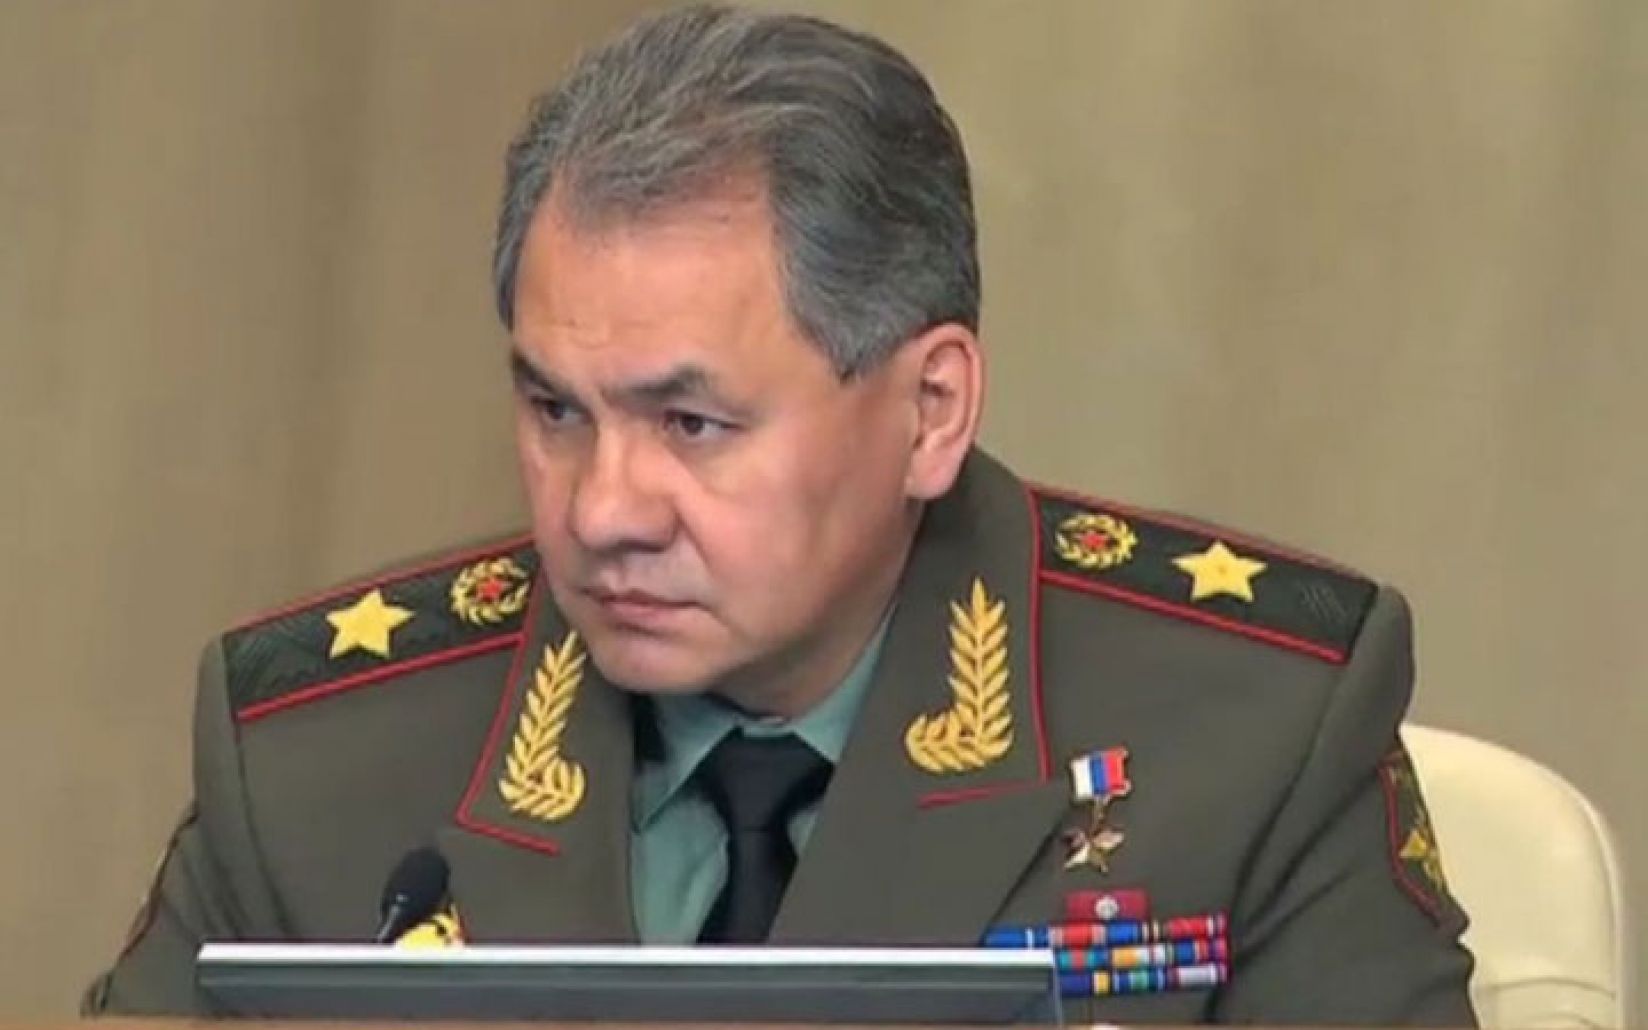 وزير الدفاع الروسي